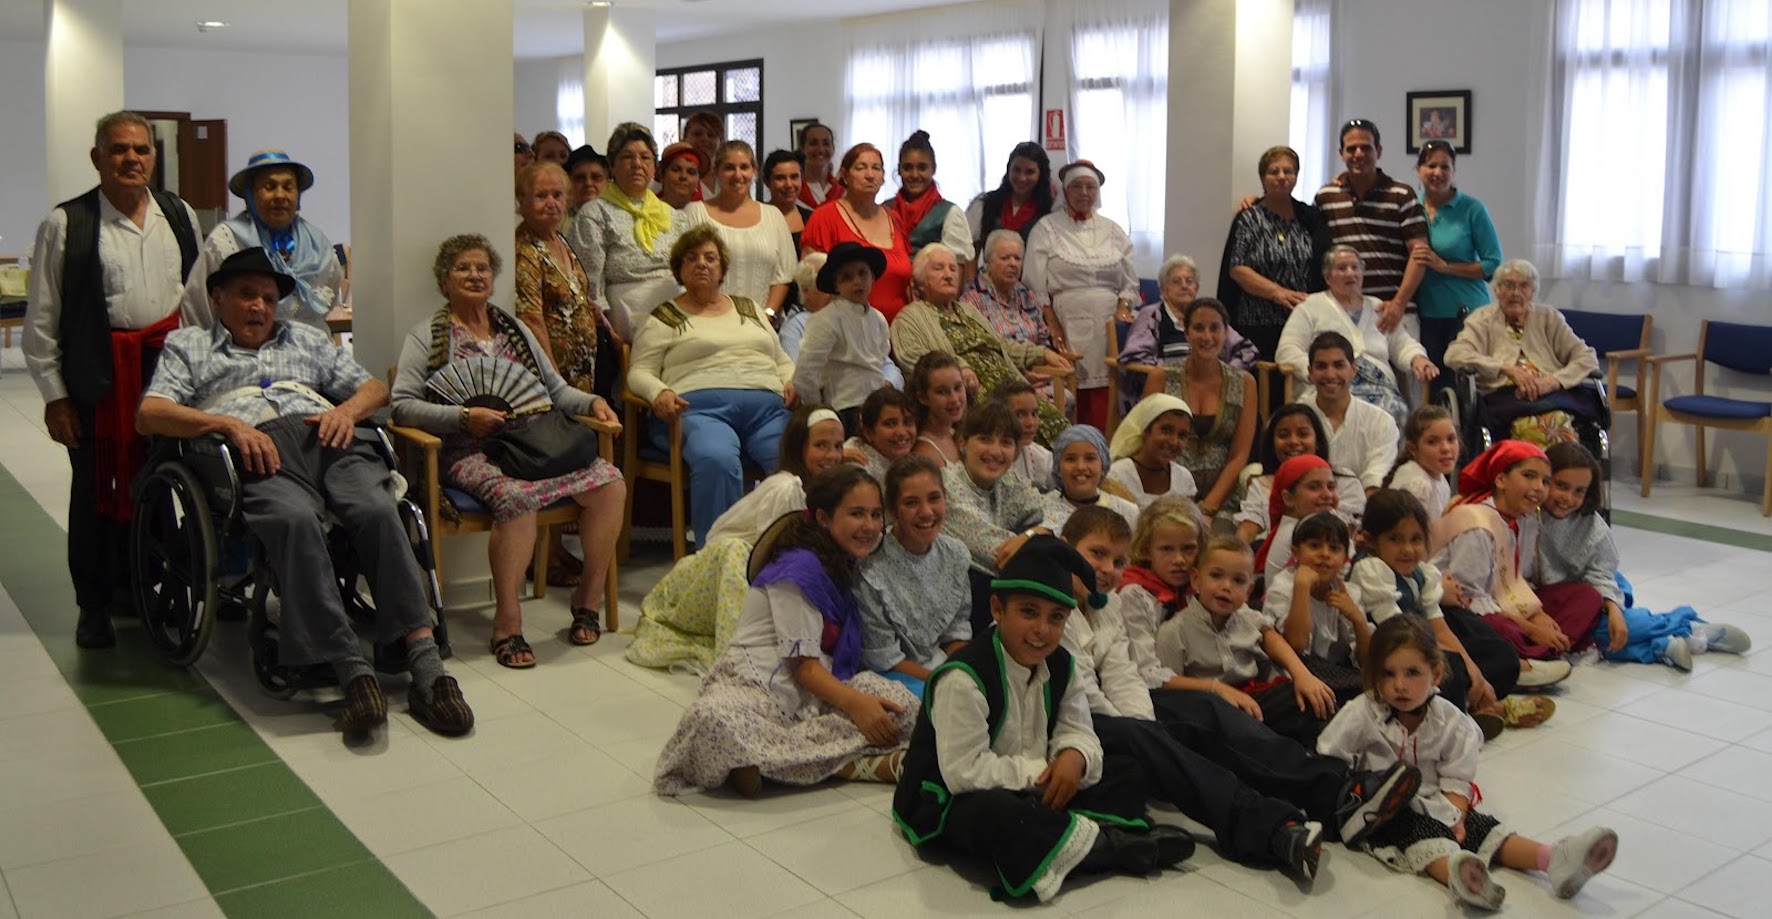  La Asociación Cultural Amador realiza su visita anual a las residencias de mayores